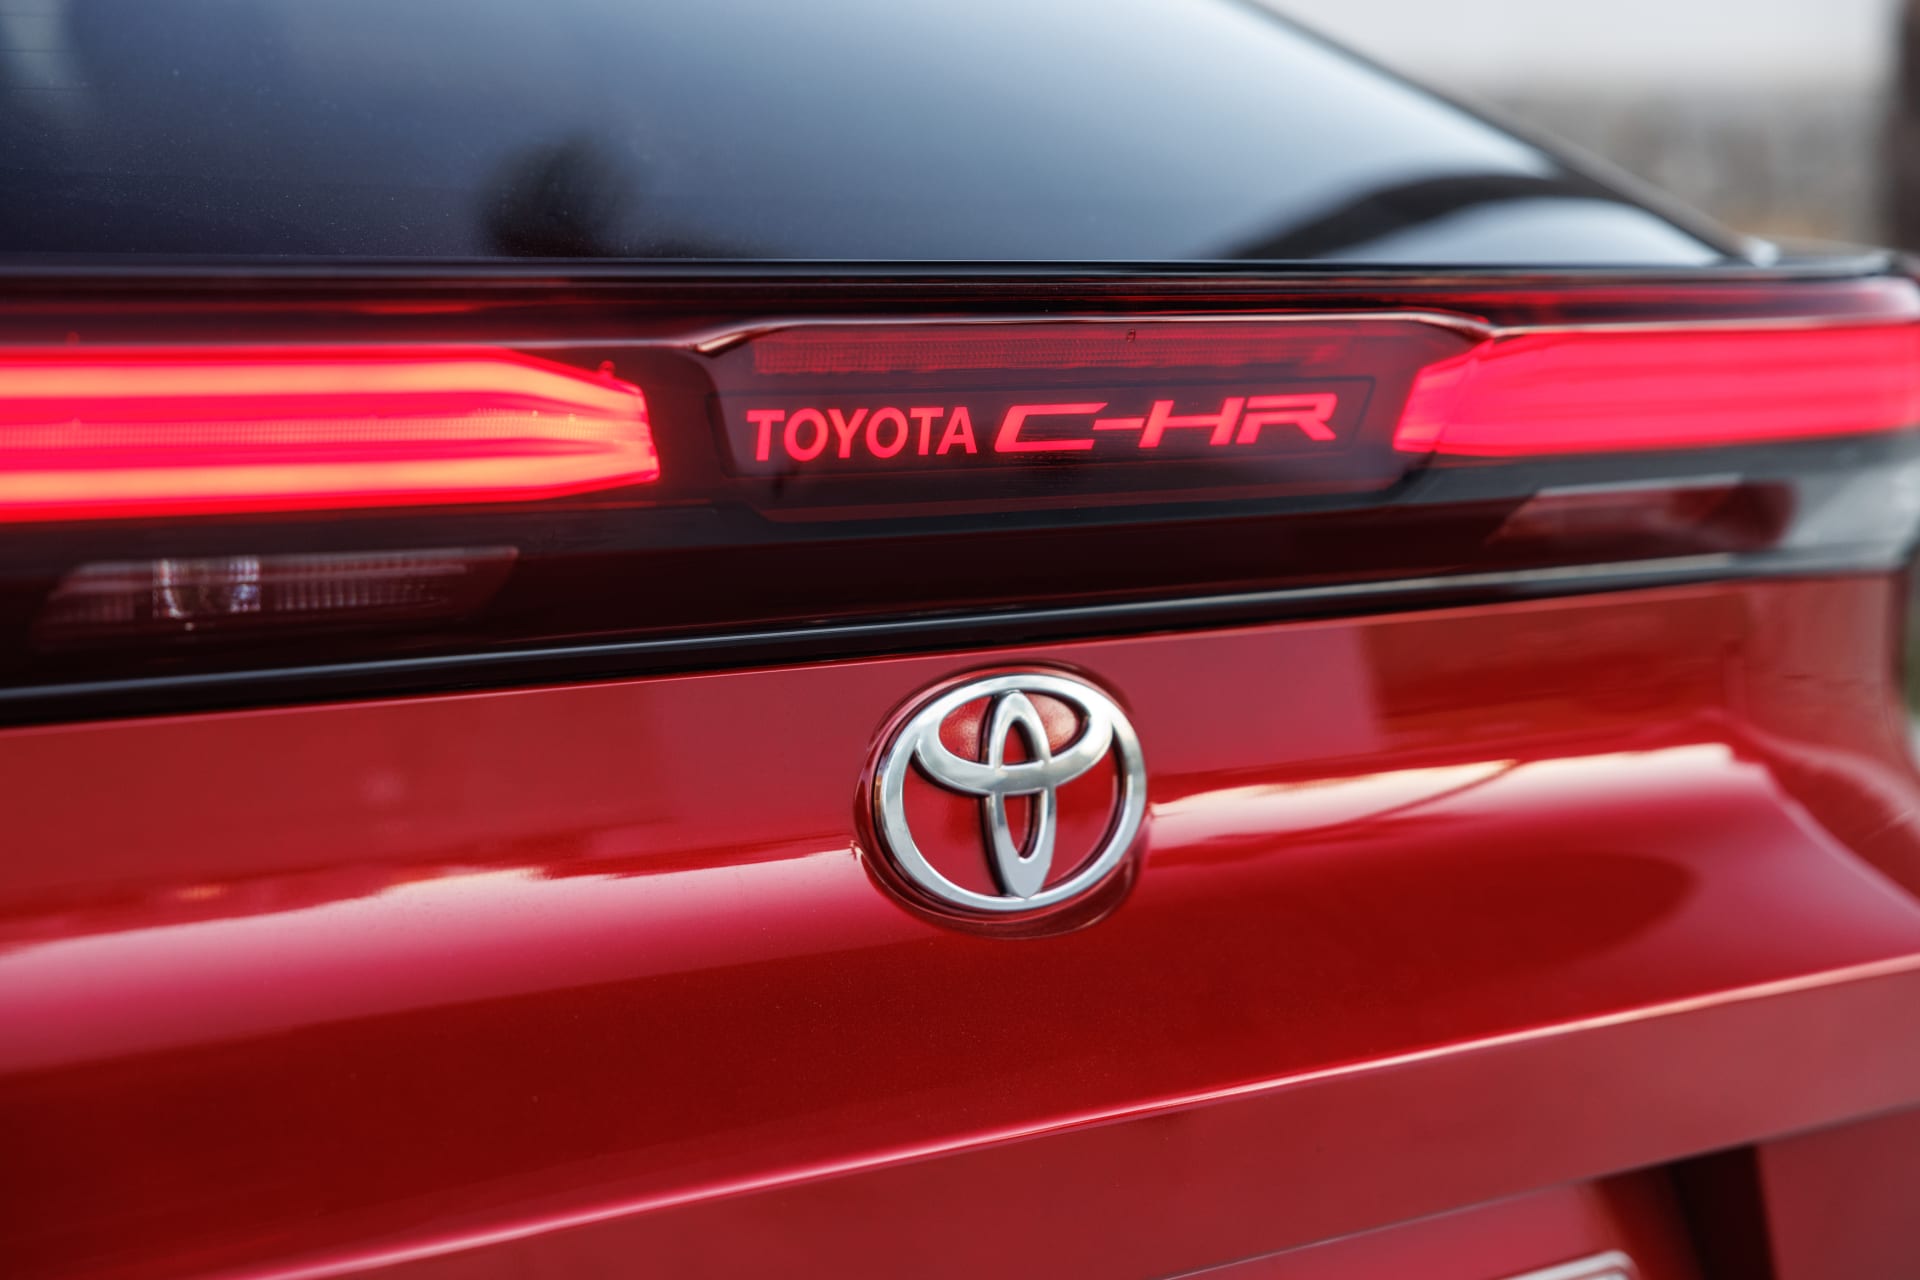 Světelný nápis Toyota C-HR na zádi vozu.